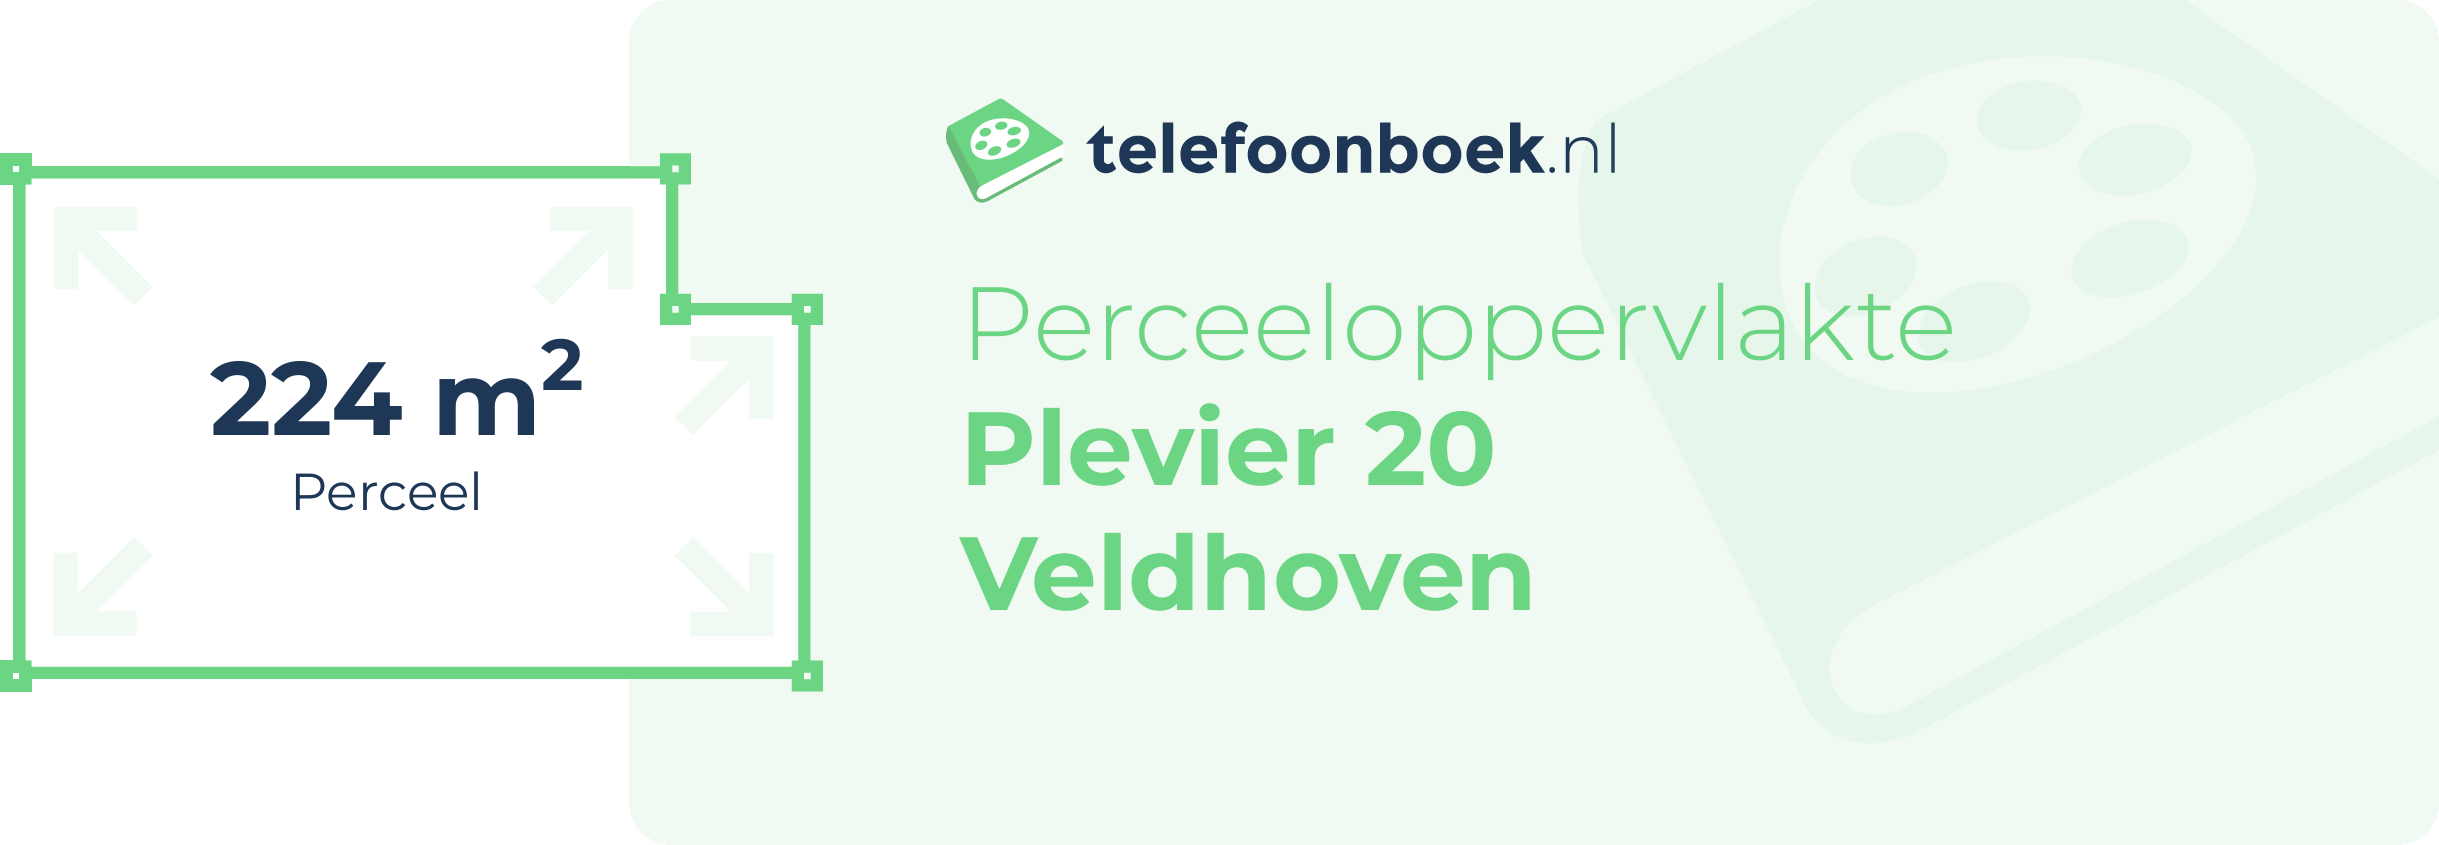 Perceeloppervlakte Plevier 20 Veldhoven